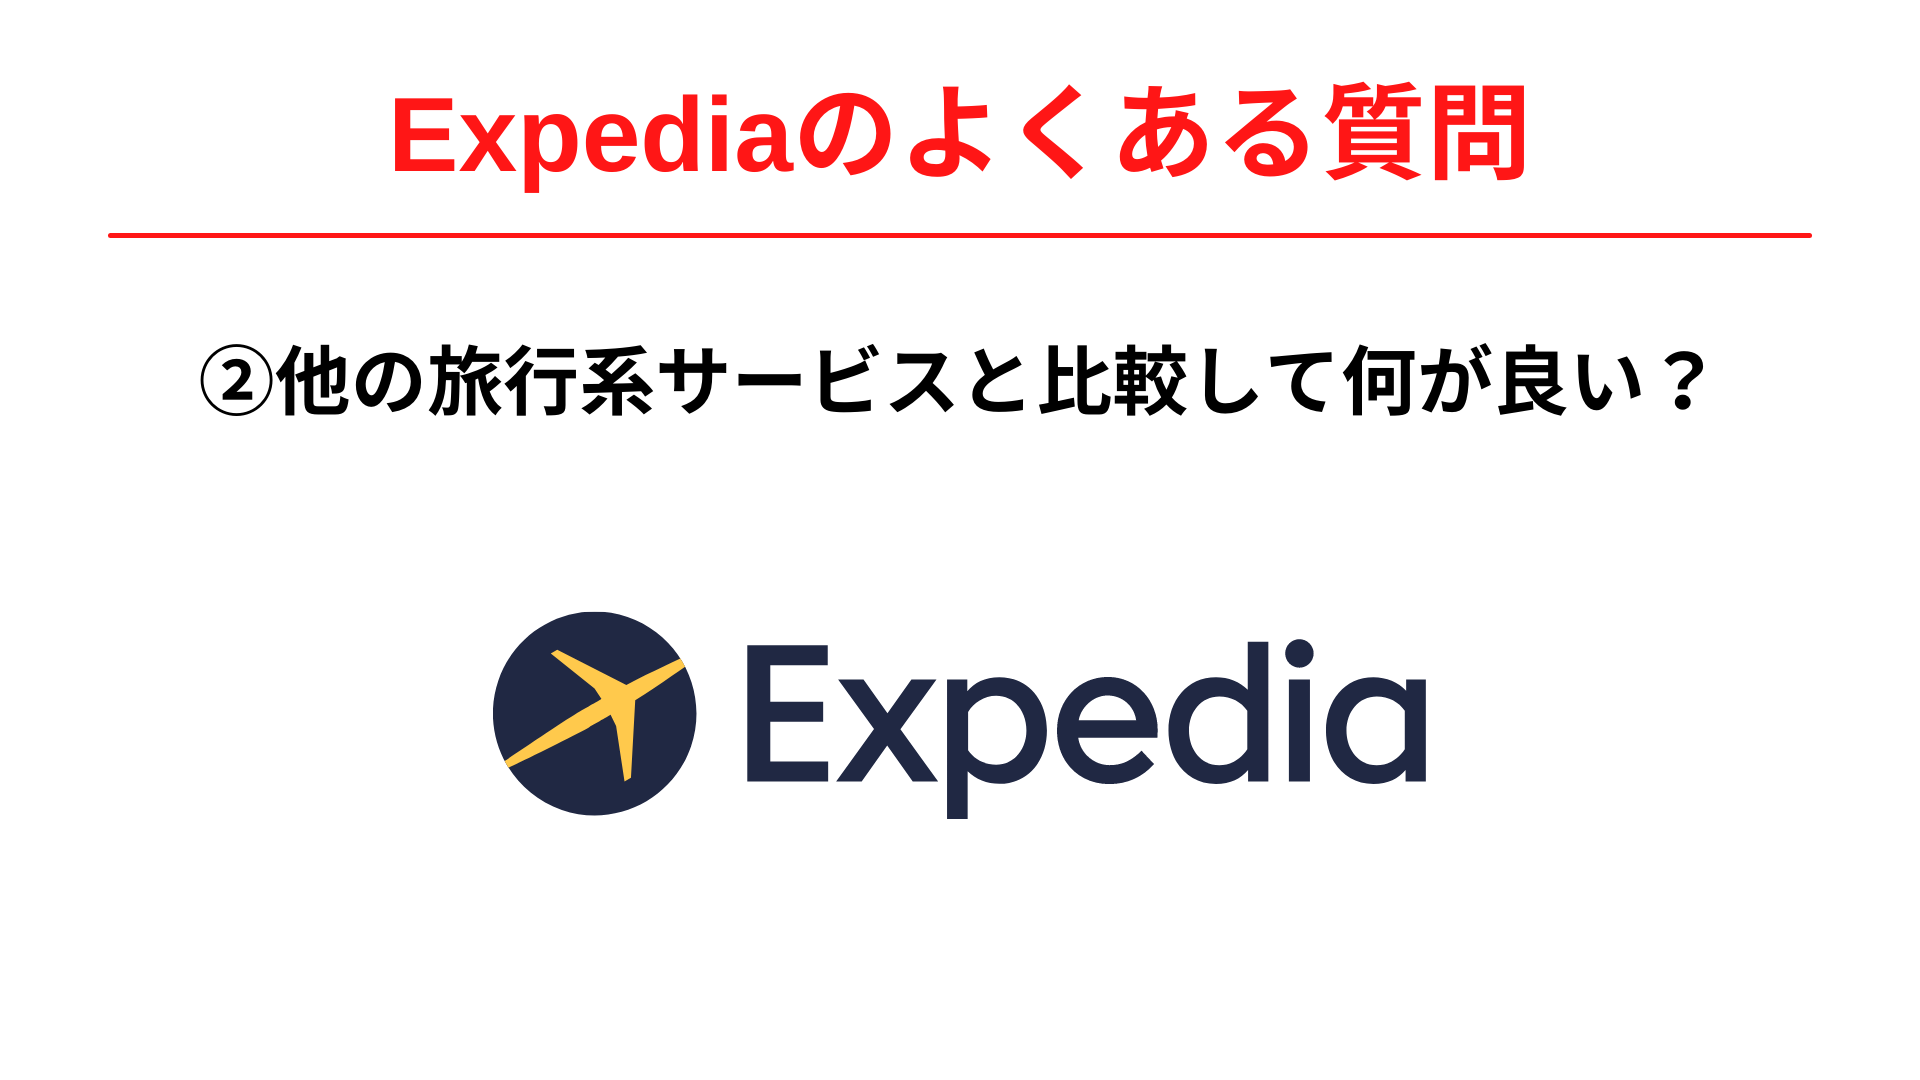 Expedia(エクスペディア)は他の旅行系サービスと比較して何が優れていましたか？